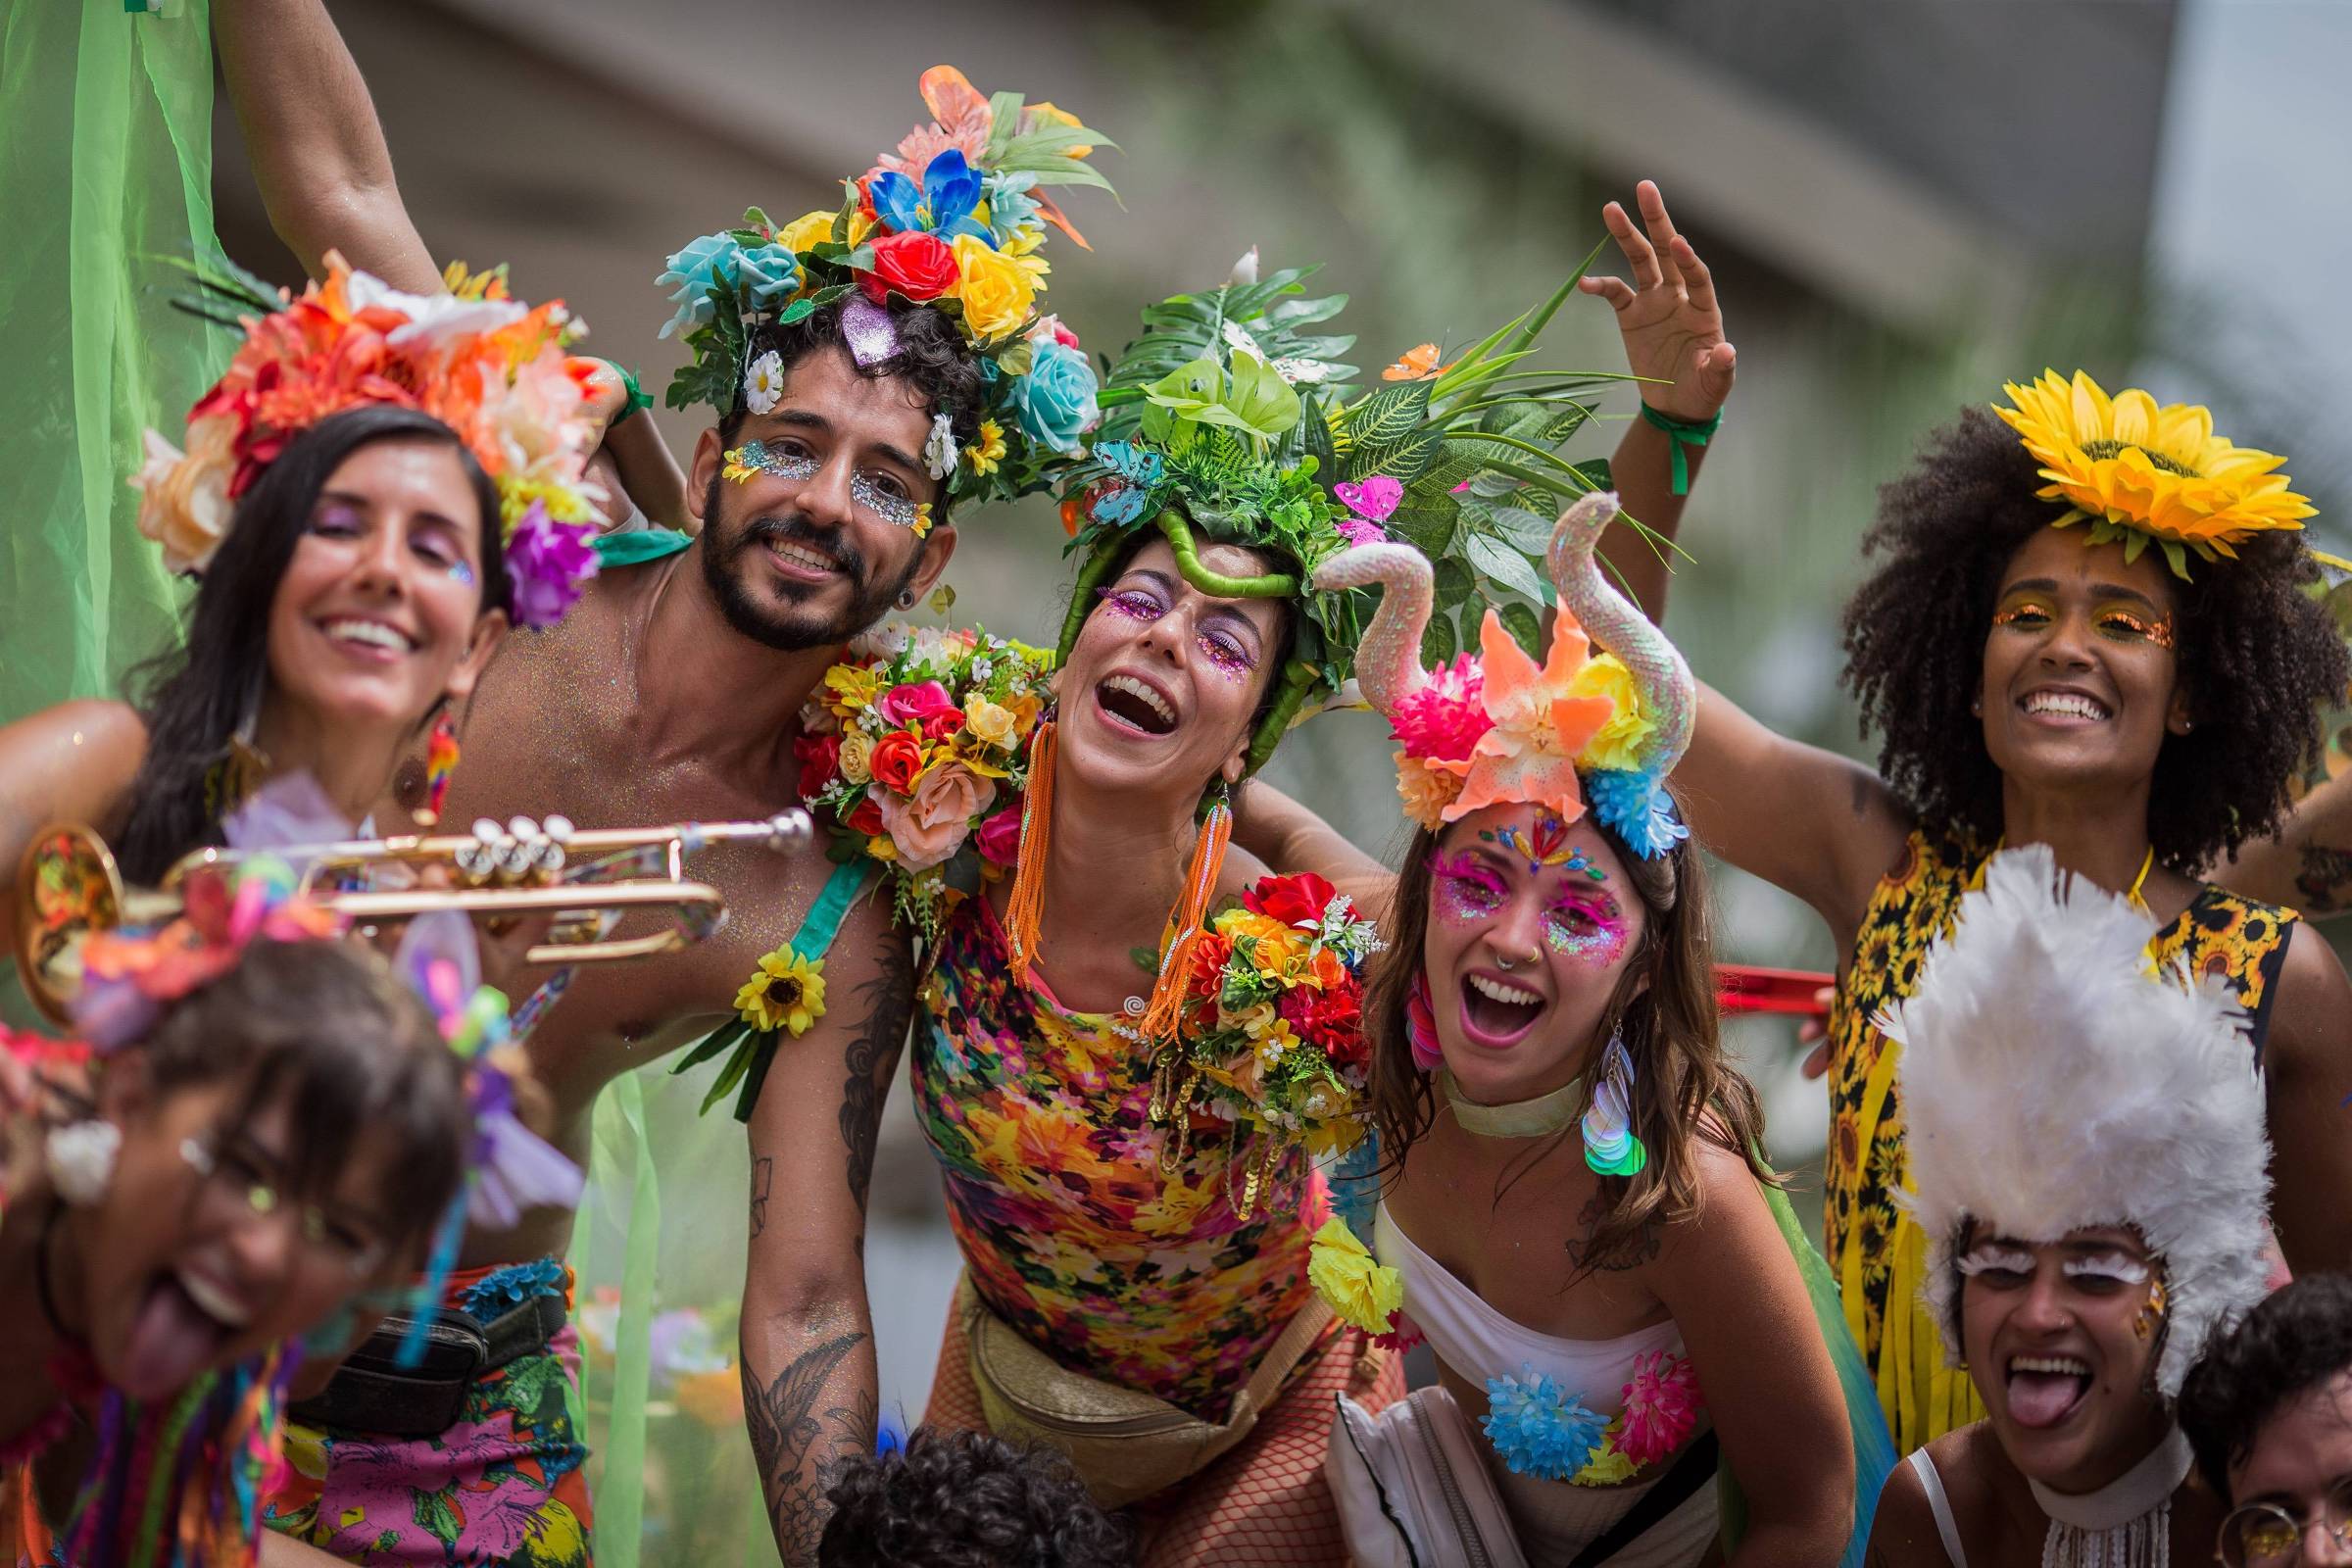 Qualidade de Vida: Carnaval Blocos de Rua in Rio